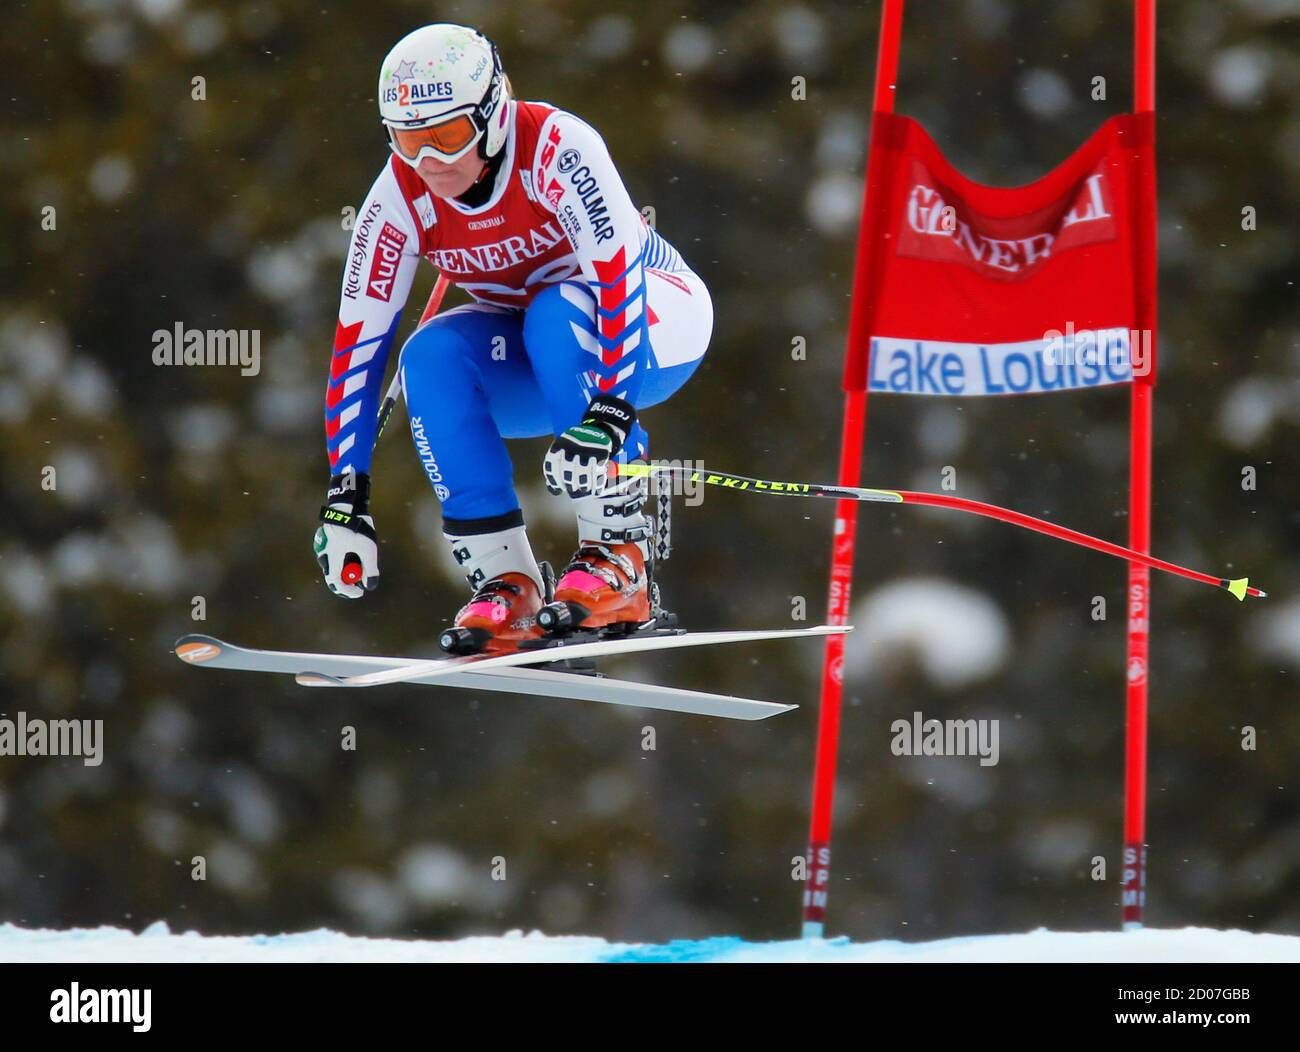 Marion Rolland di Francia si è posto il più veloce tempo durante l'allenamento di sci alpino per la Coppa del mondo delle Donne Downhill a Lake Louise, Alberta, 29 novembre 2012. REUTERS/Mike Blake (CANADA - Tags: SCI SPORTIVO) Foto Stock